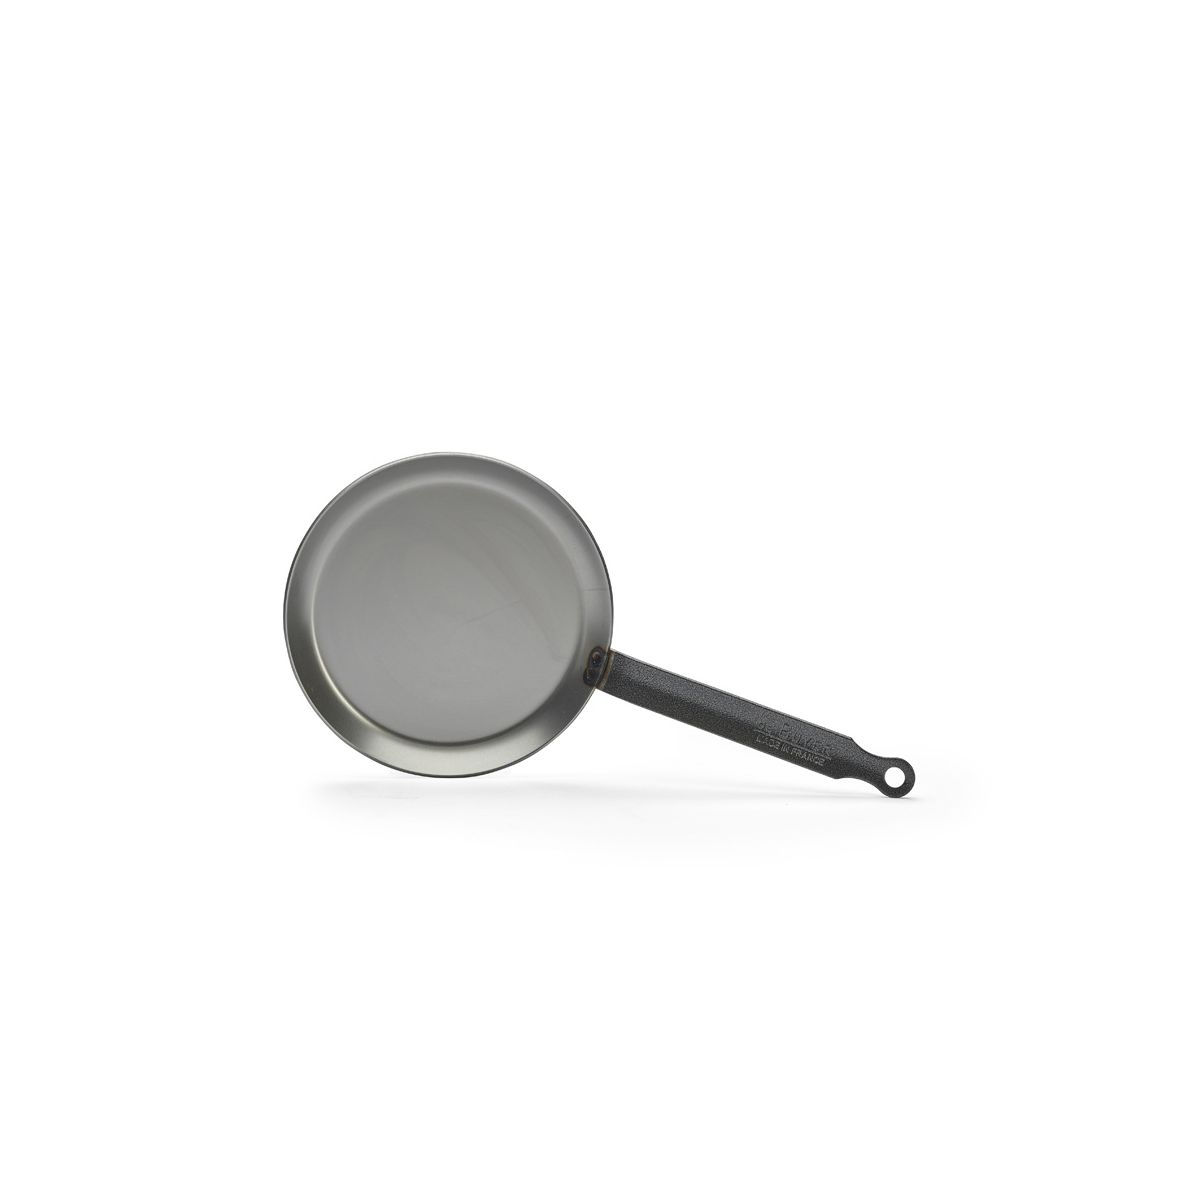 de Buyer Acier Carbone Plus-pancake pan 26cm 5120.26